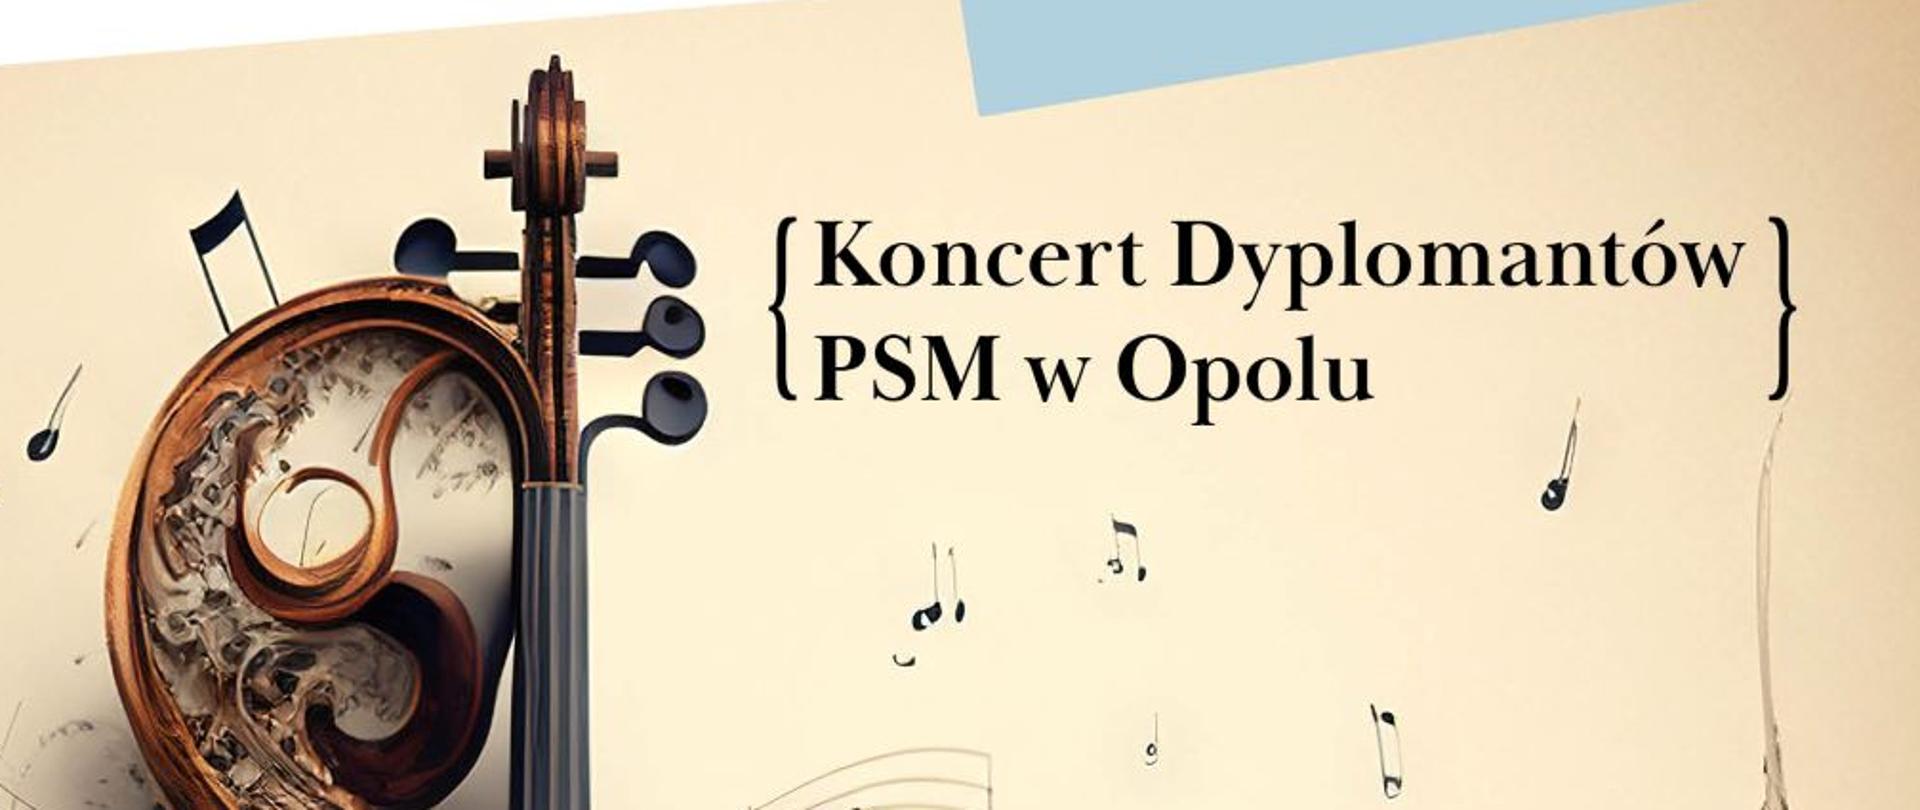 w centralnej części znajduje się grafika skrzypiec, w górnej części logo Filharmonii Opolskiej i Państwowej Szkoły Muzycznej w Opolu, w prawym dolnym rogu informacja o wykonawcach